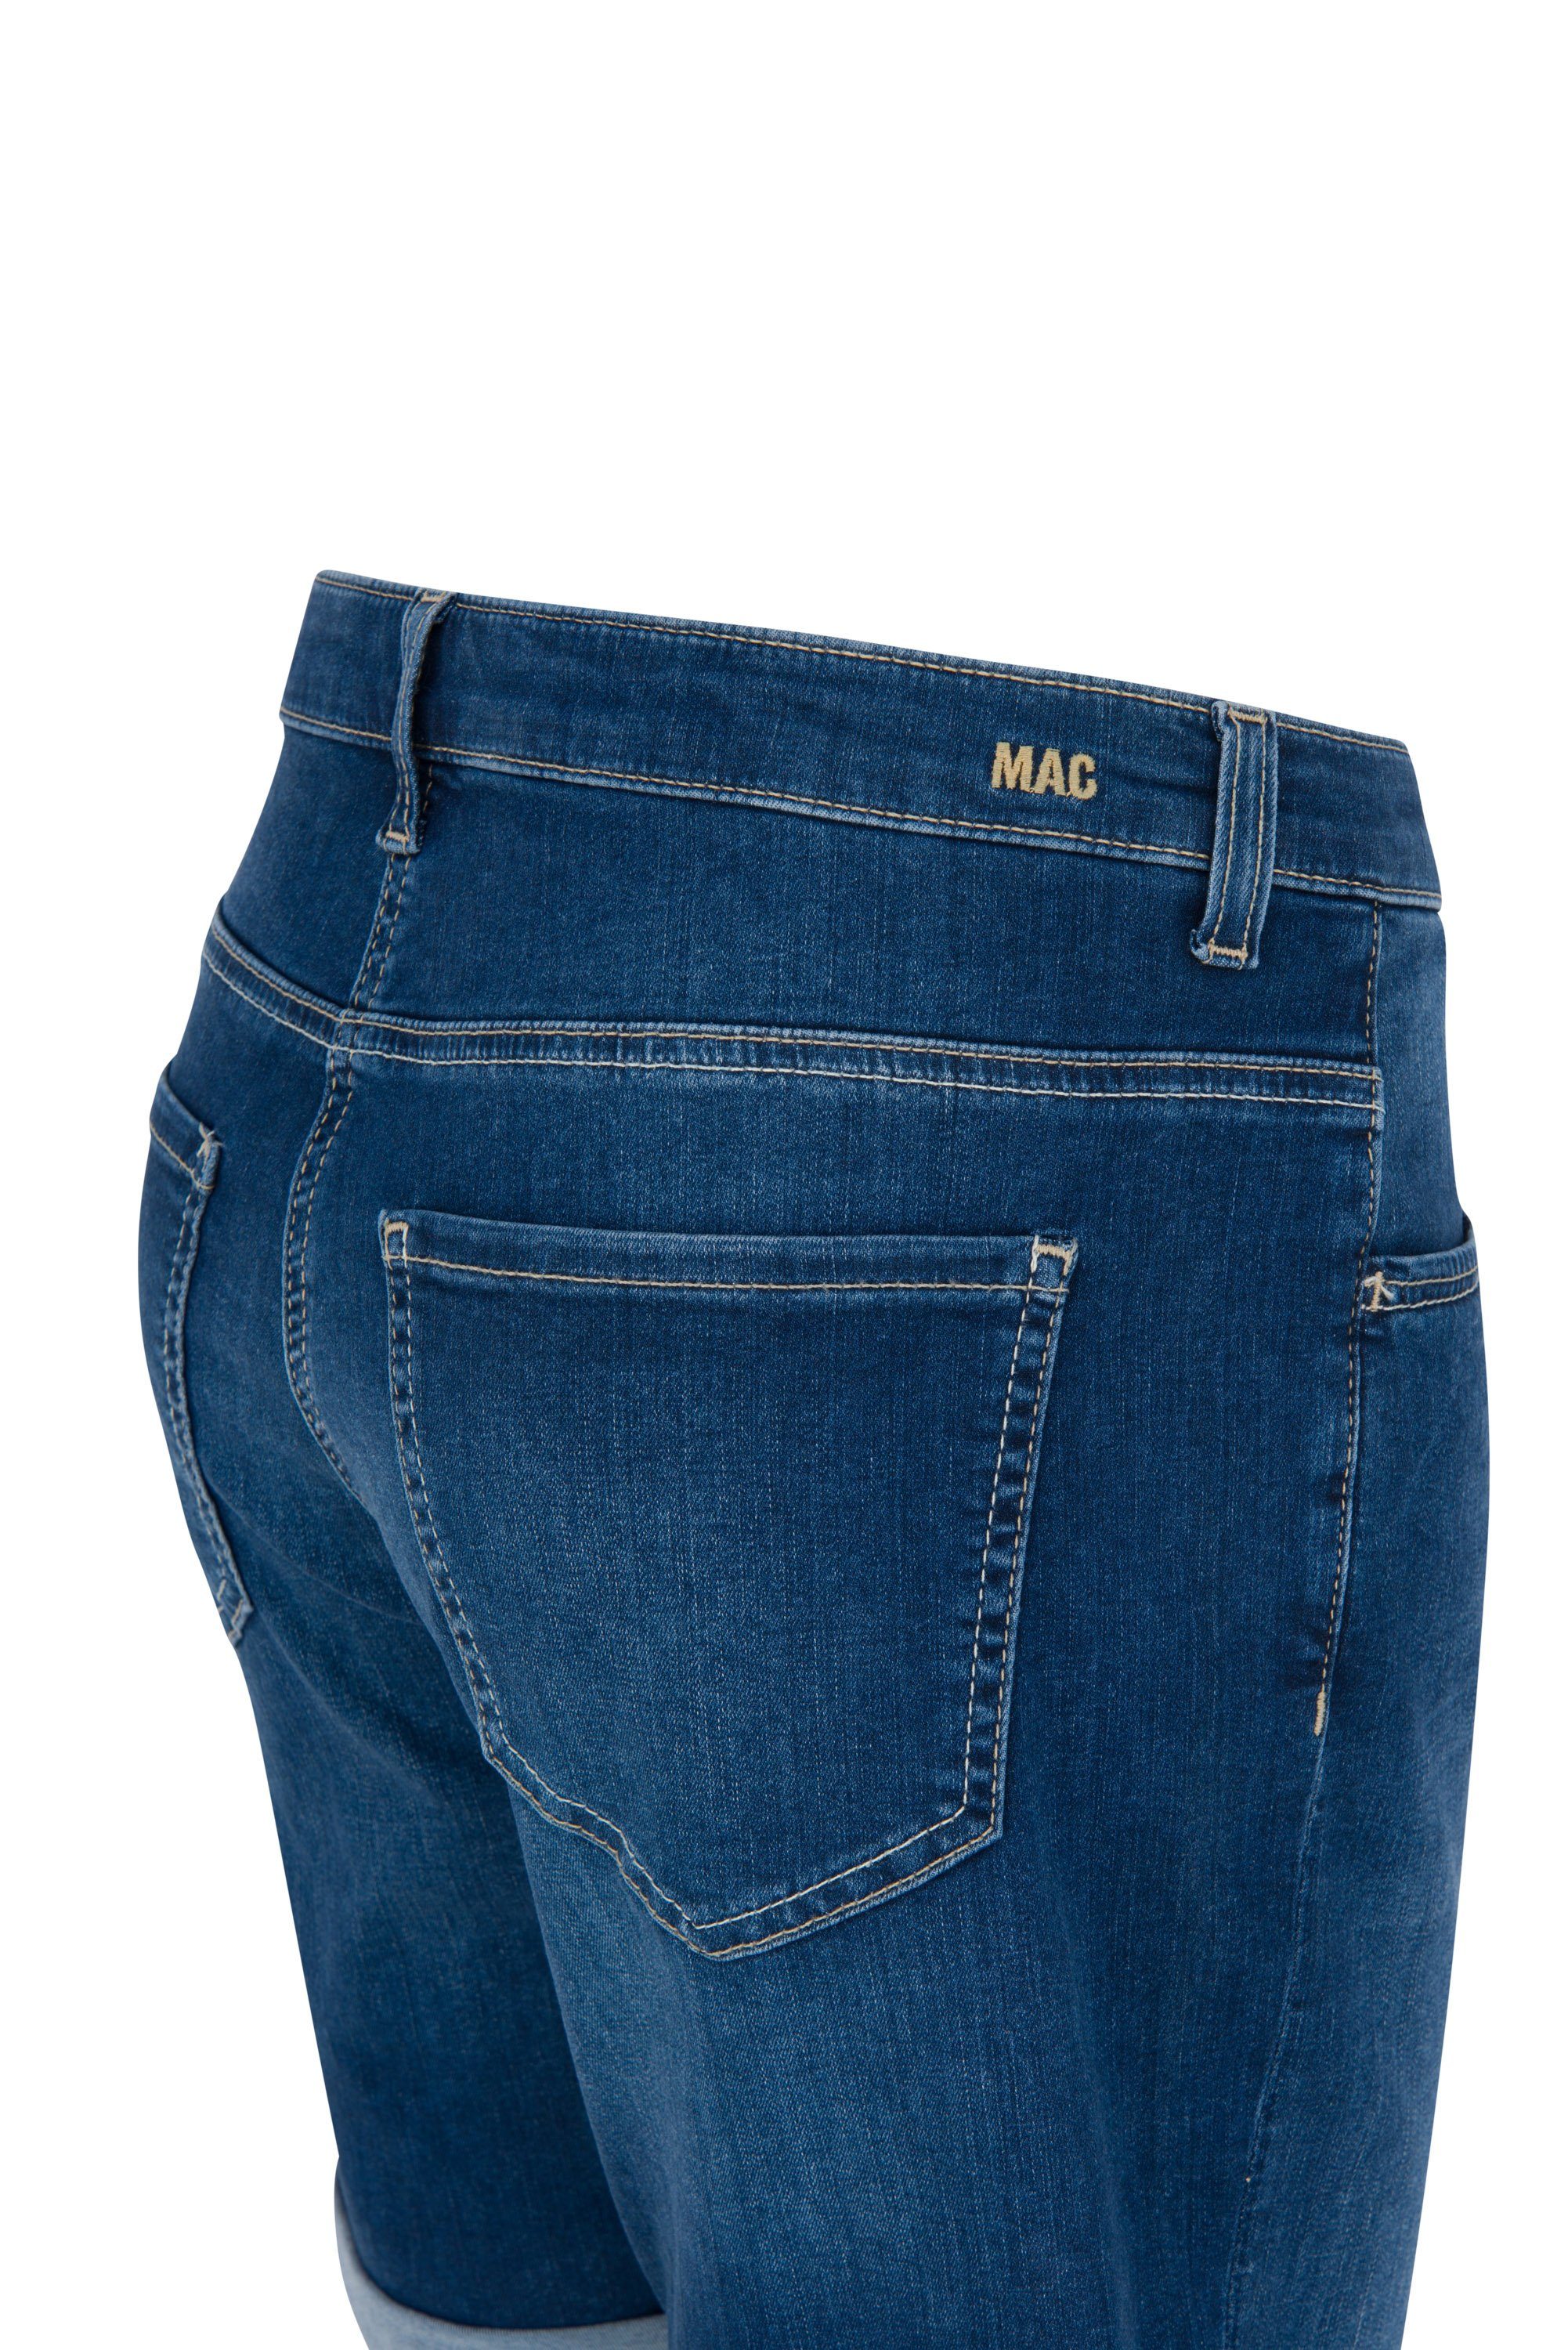 SHORTY Stretch-Jeans D844 2387-90-0396 SUMMER wash MAC basic MAC